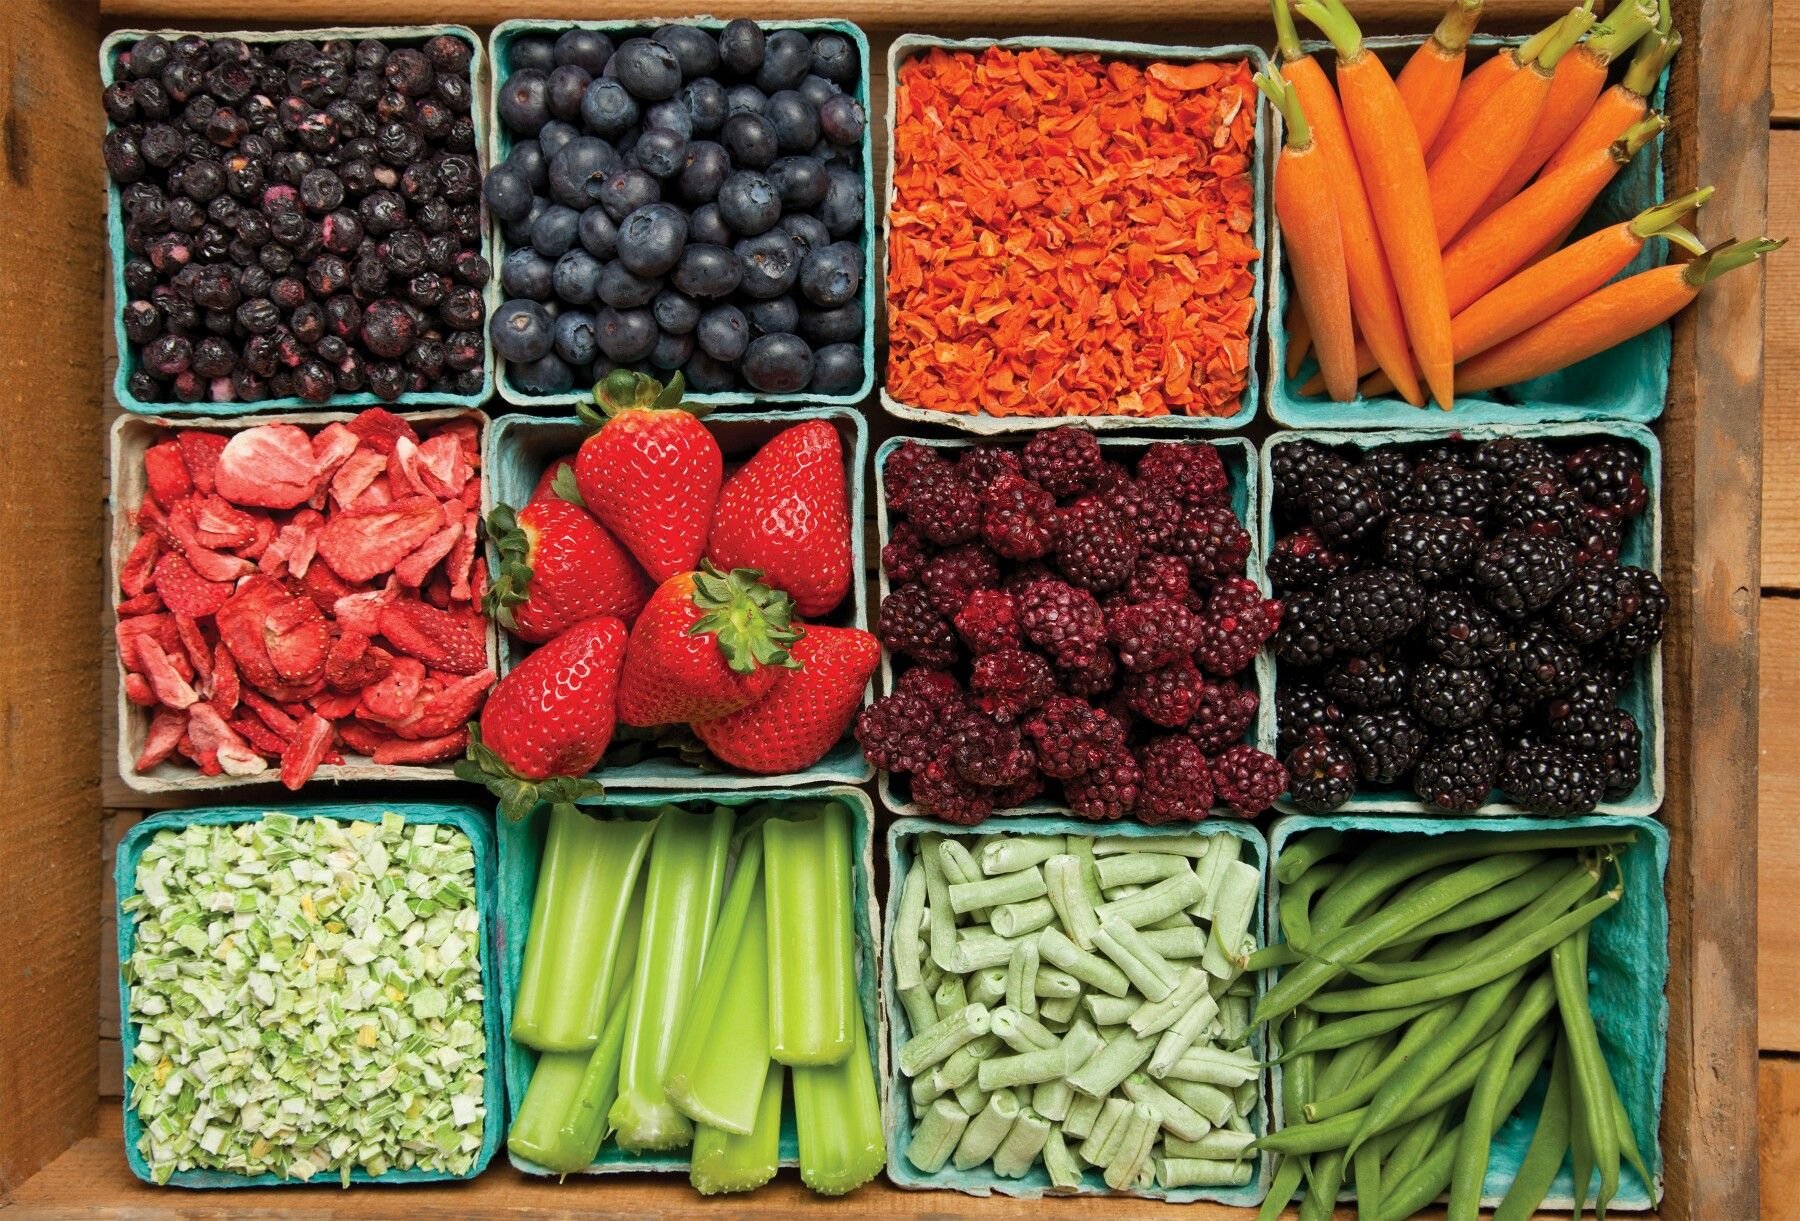 Find vegetables. Овощи, фрукты, ягоды. Овощи разные. Плоды и овощи. Хранение и переработка плодов и овощей.